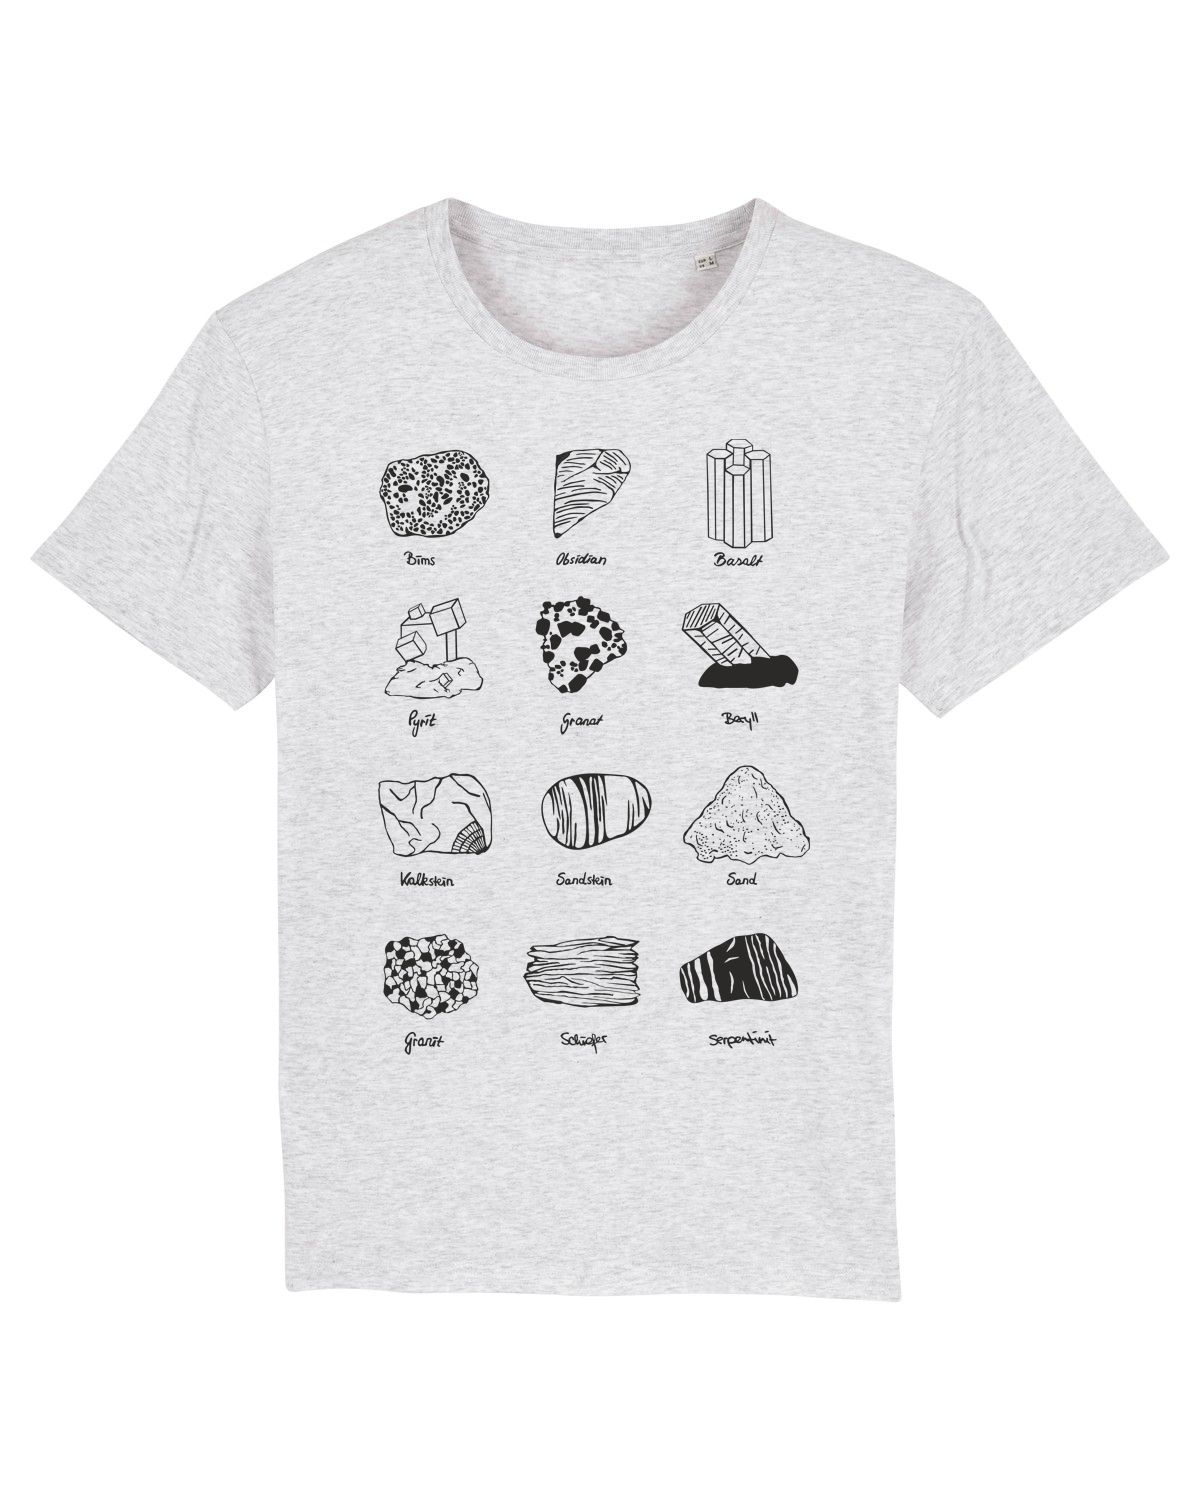 Geologie T-Shirt Steine